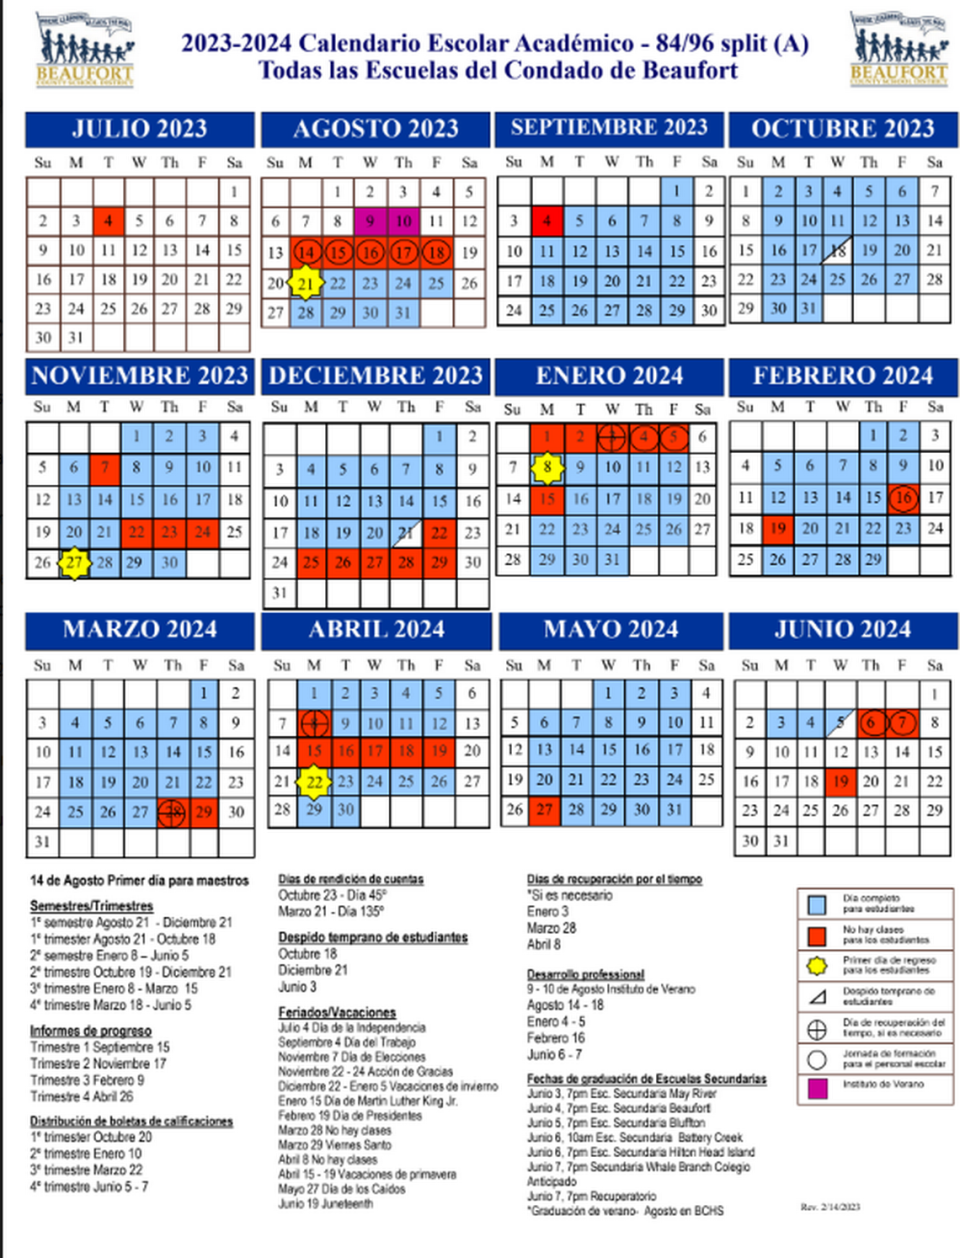 Beaufort County 2023-2024 school calendar in Spanish.